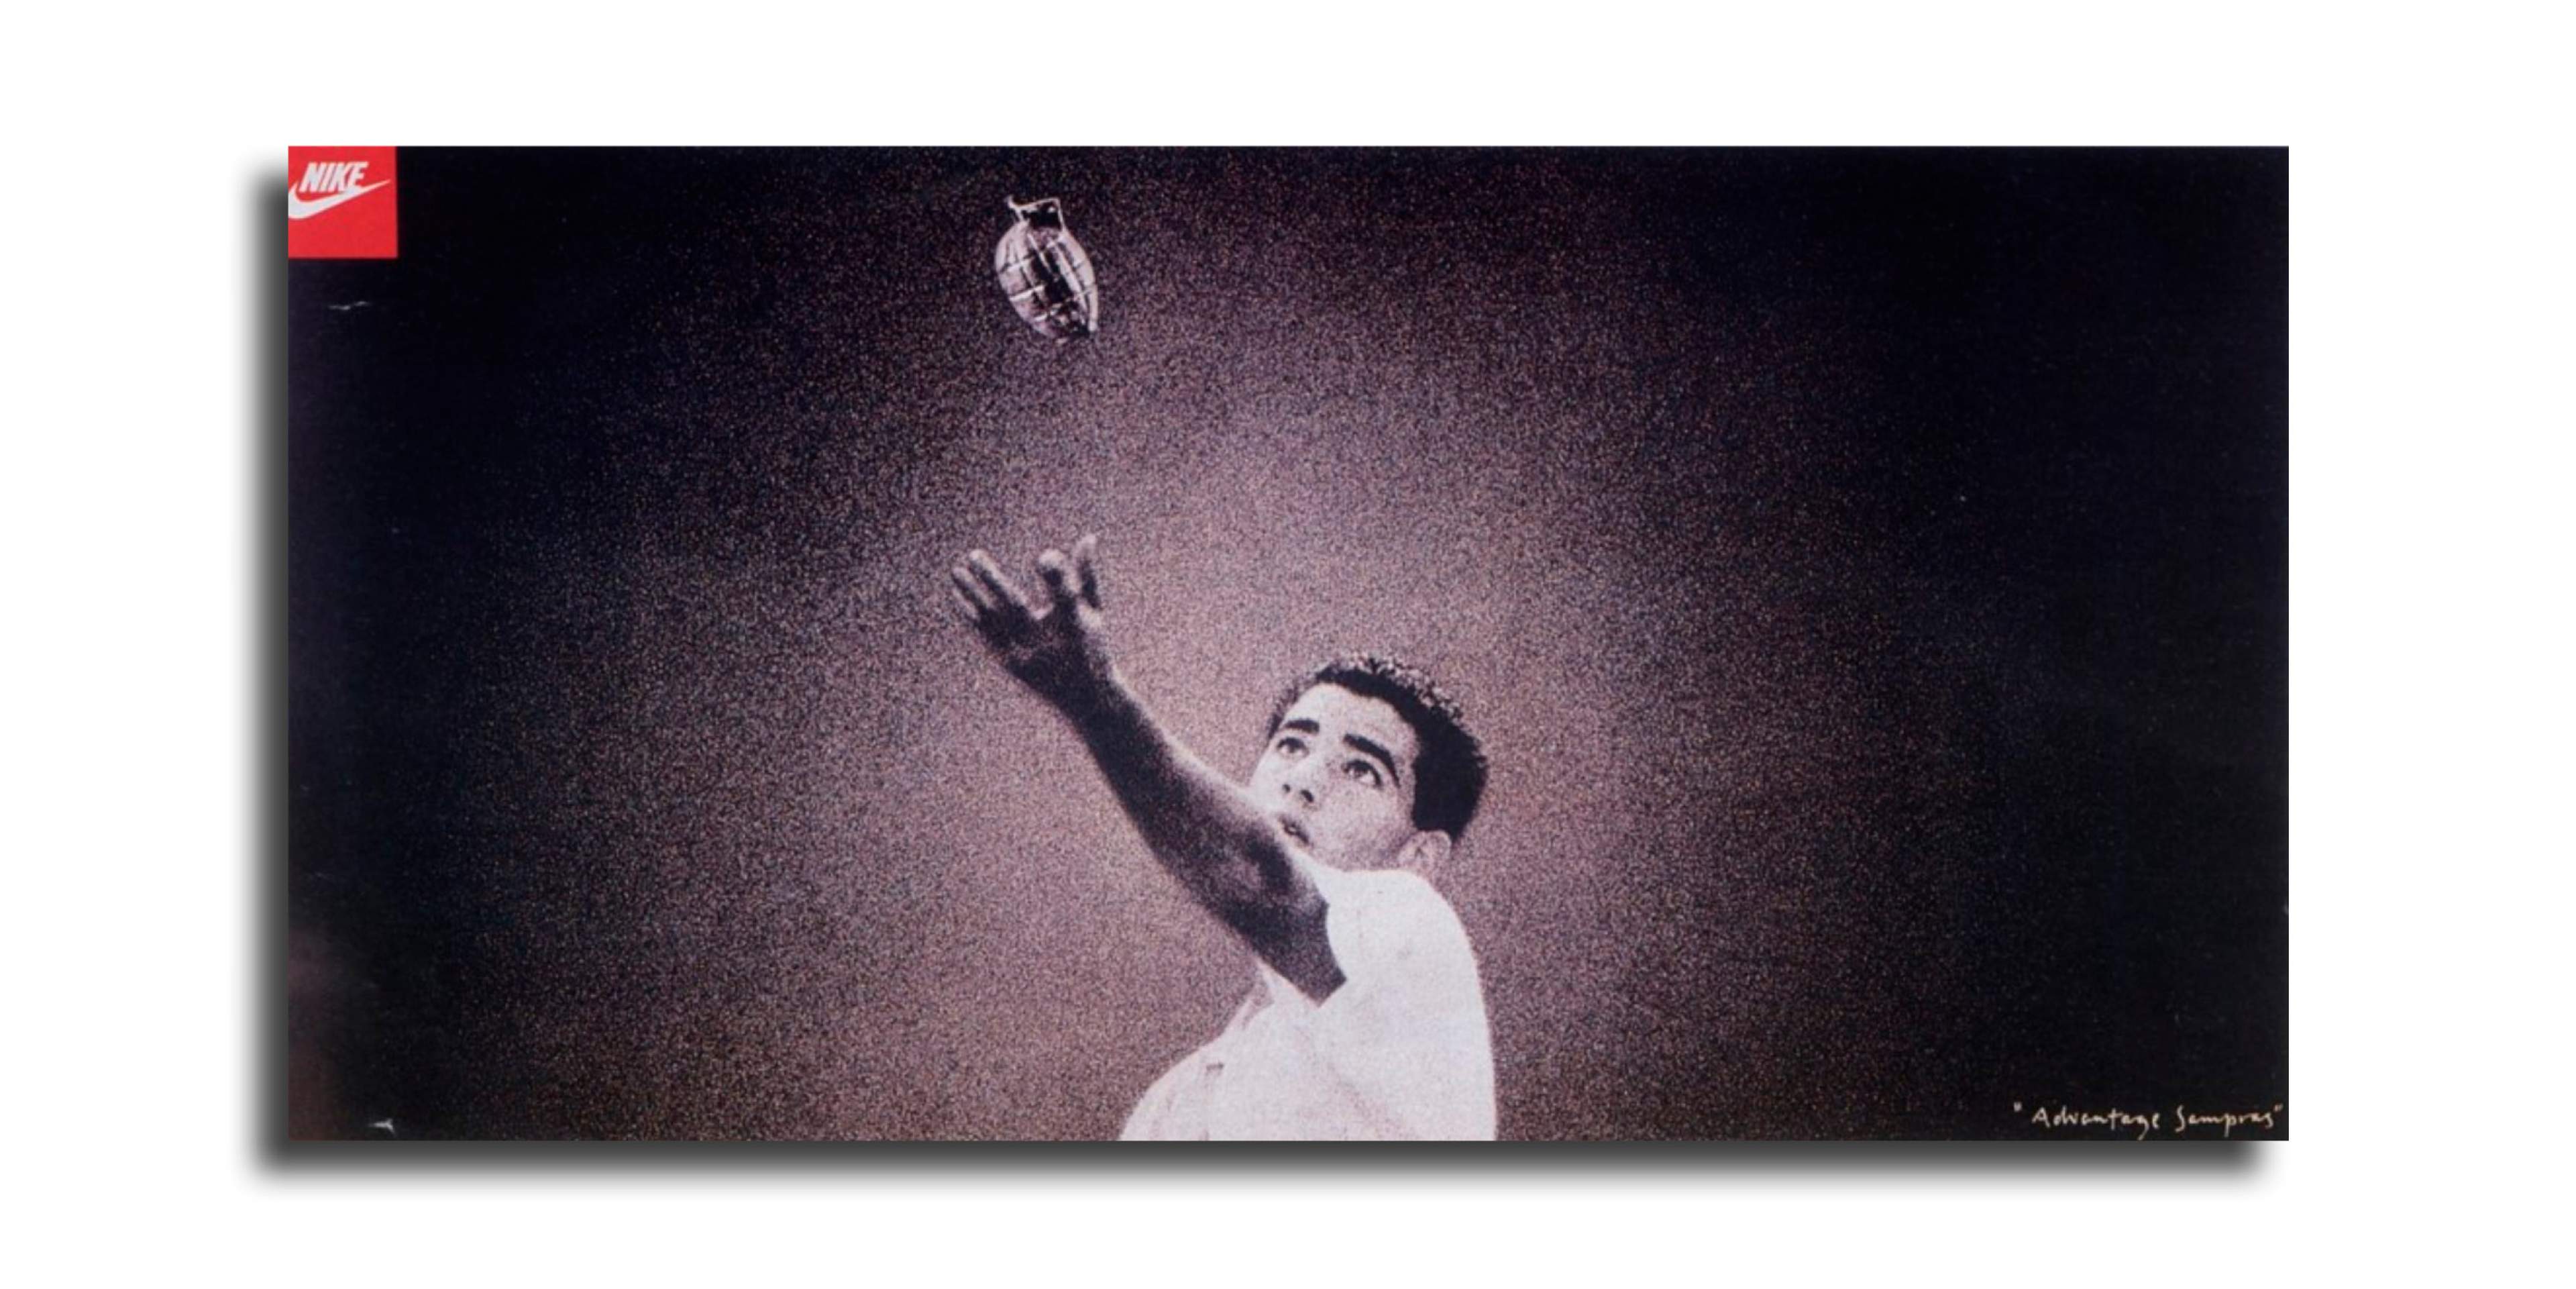 Image of Pete Sampras serving a grenade. Award-winning Nike poster.